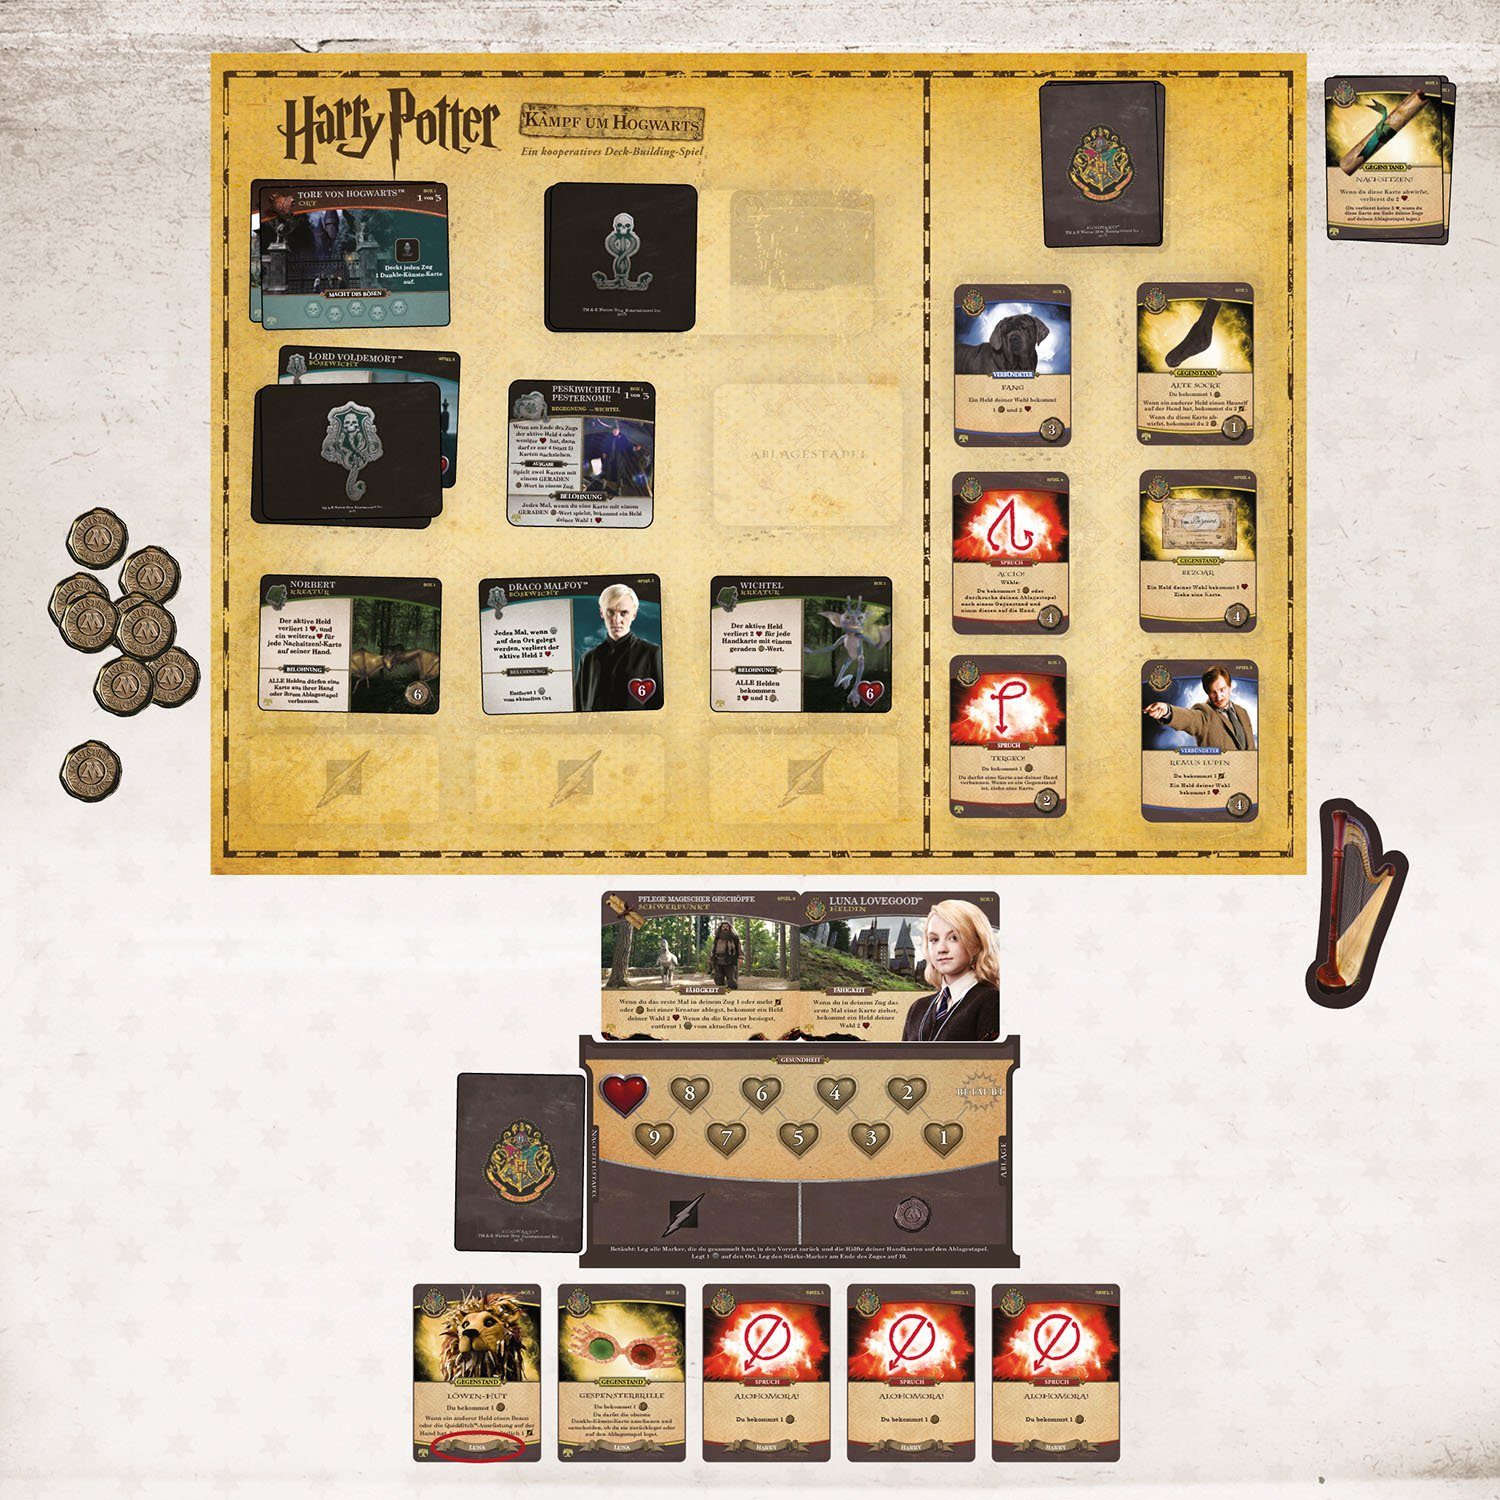 Kosmos Spiel, - Kampf - um Strategiespiel Harry Erweiterung Hogwarts Potter